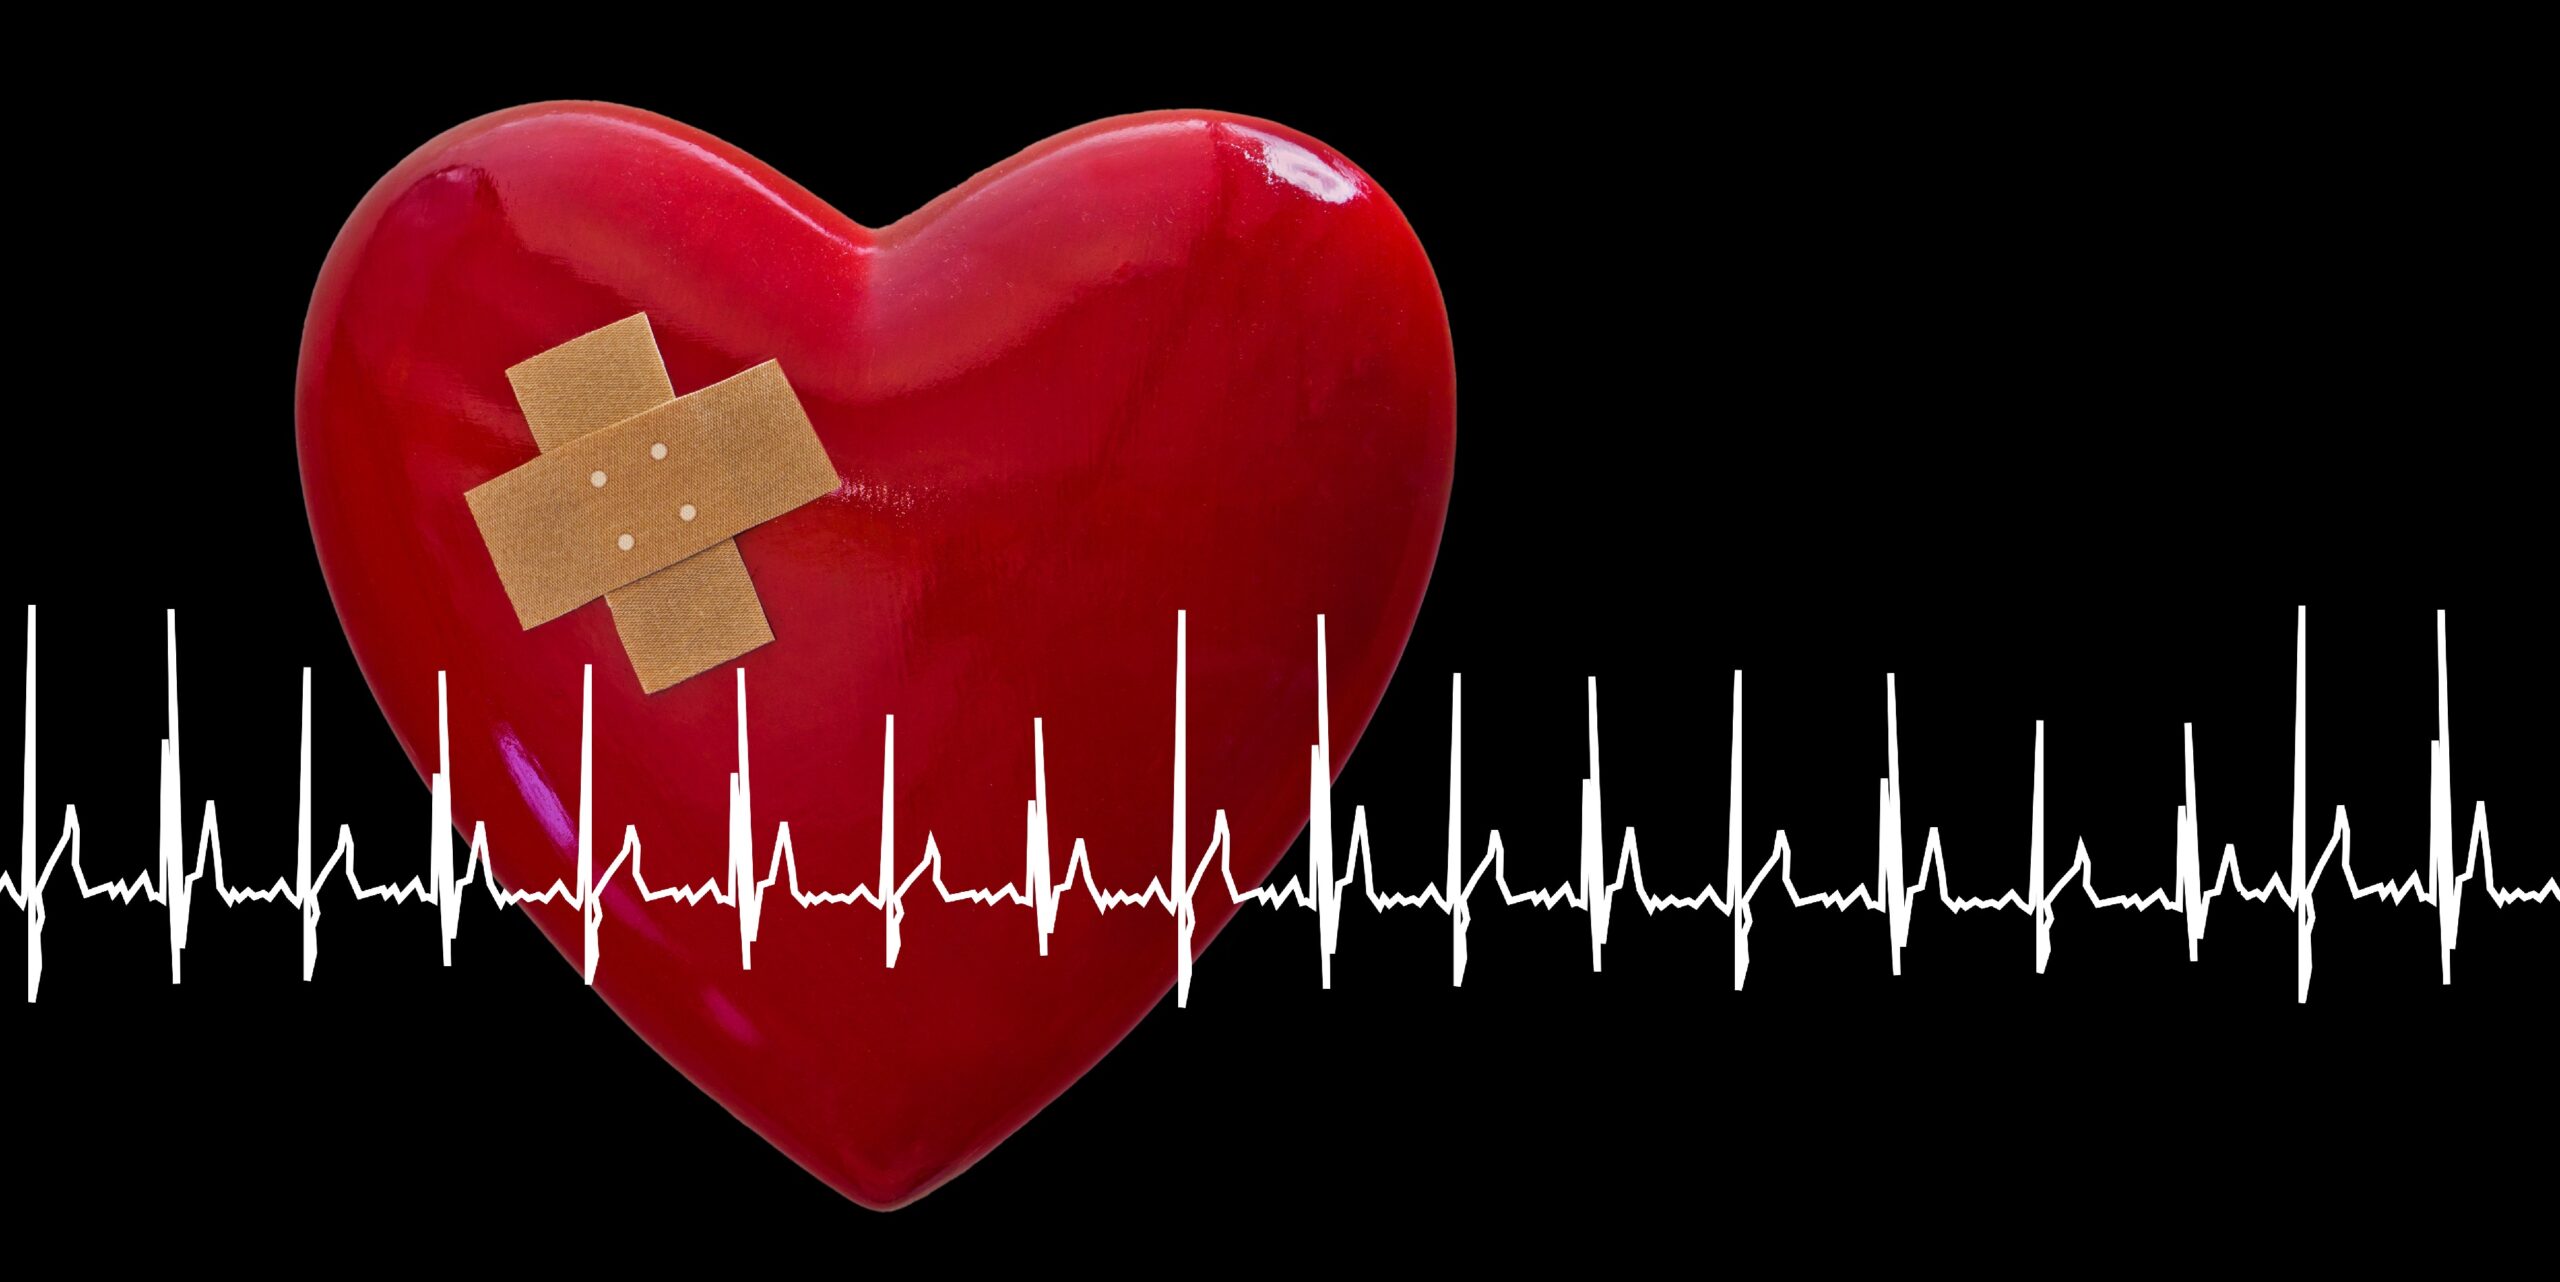 Nowe podejście terapeutyczne pozwala na regenerację serca – praktyka uzdrawiania